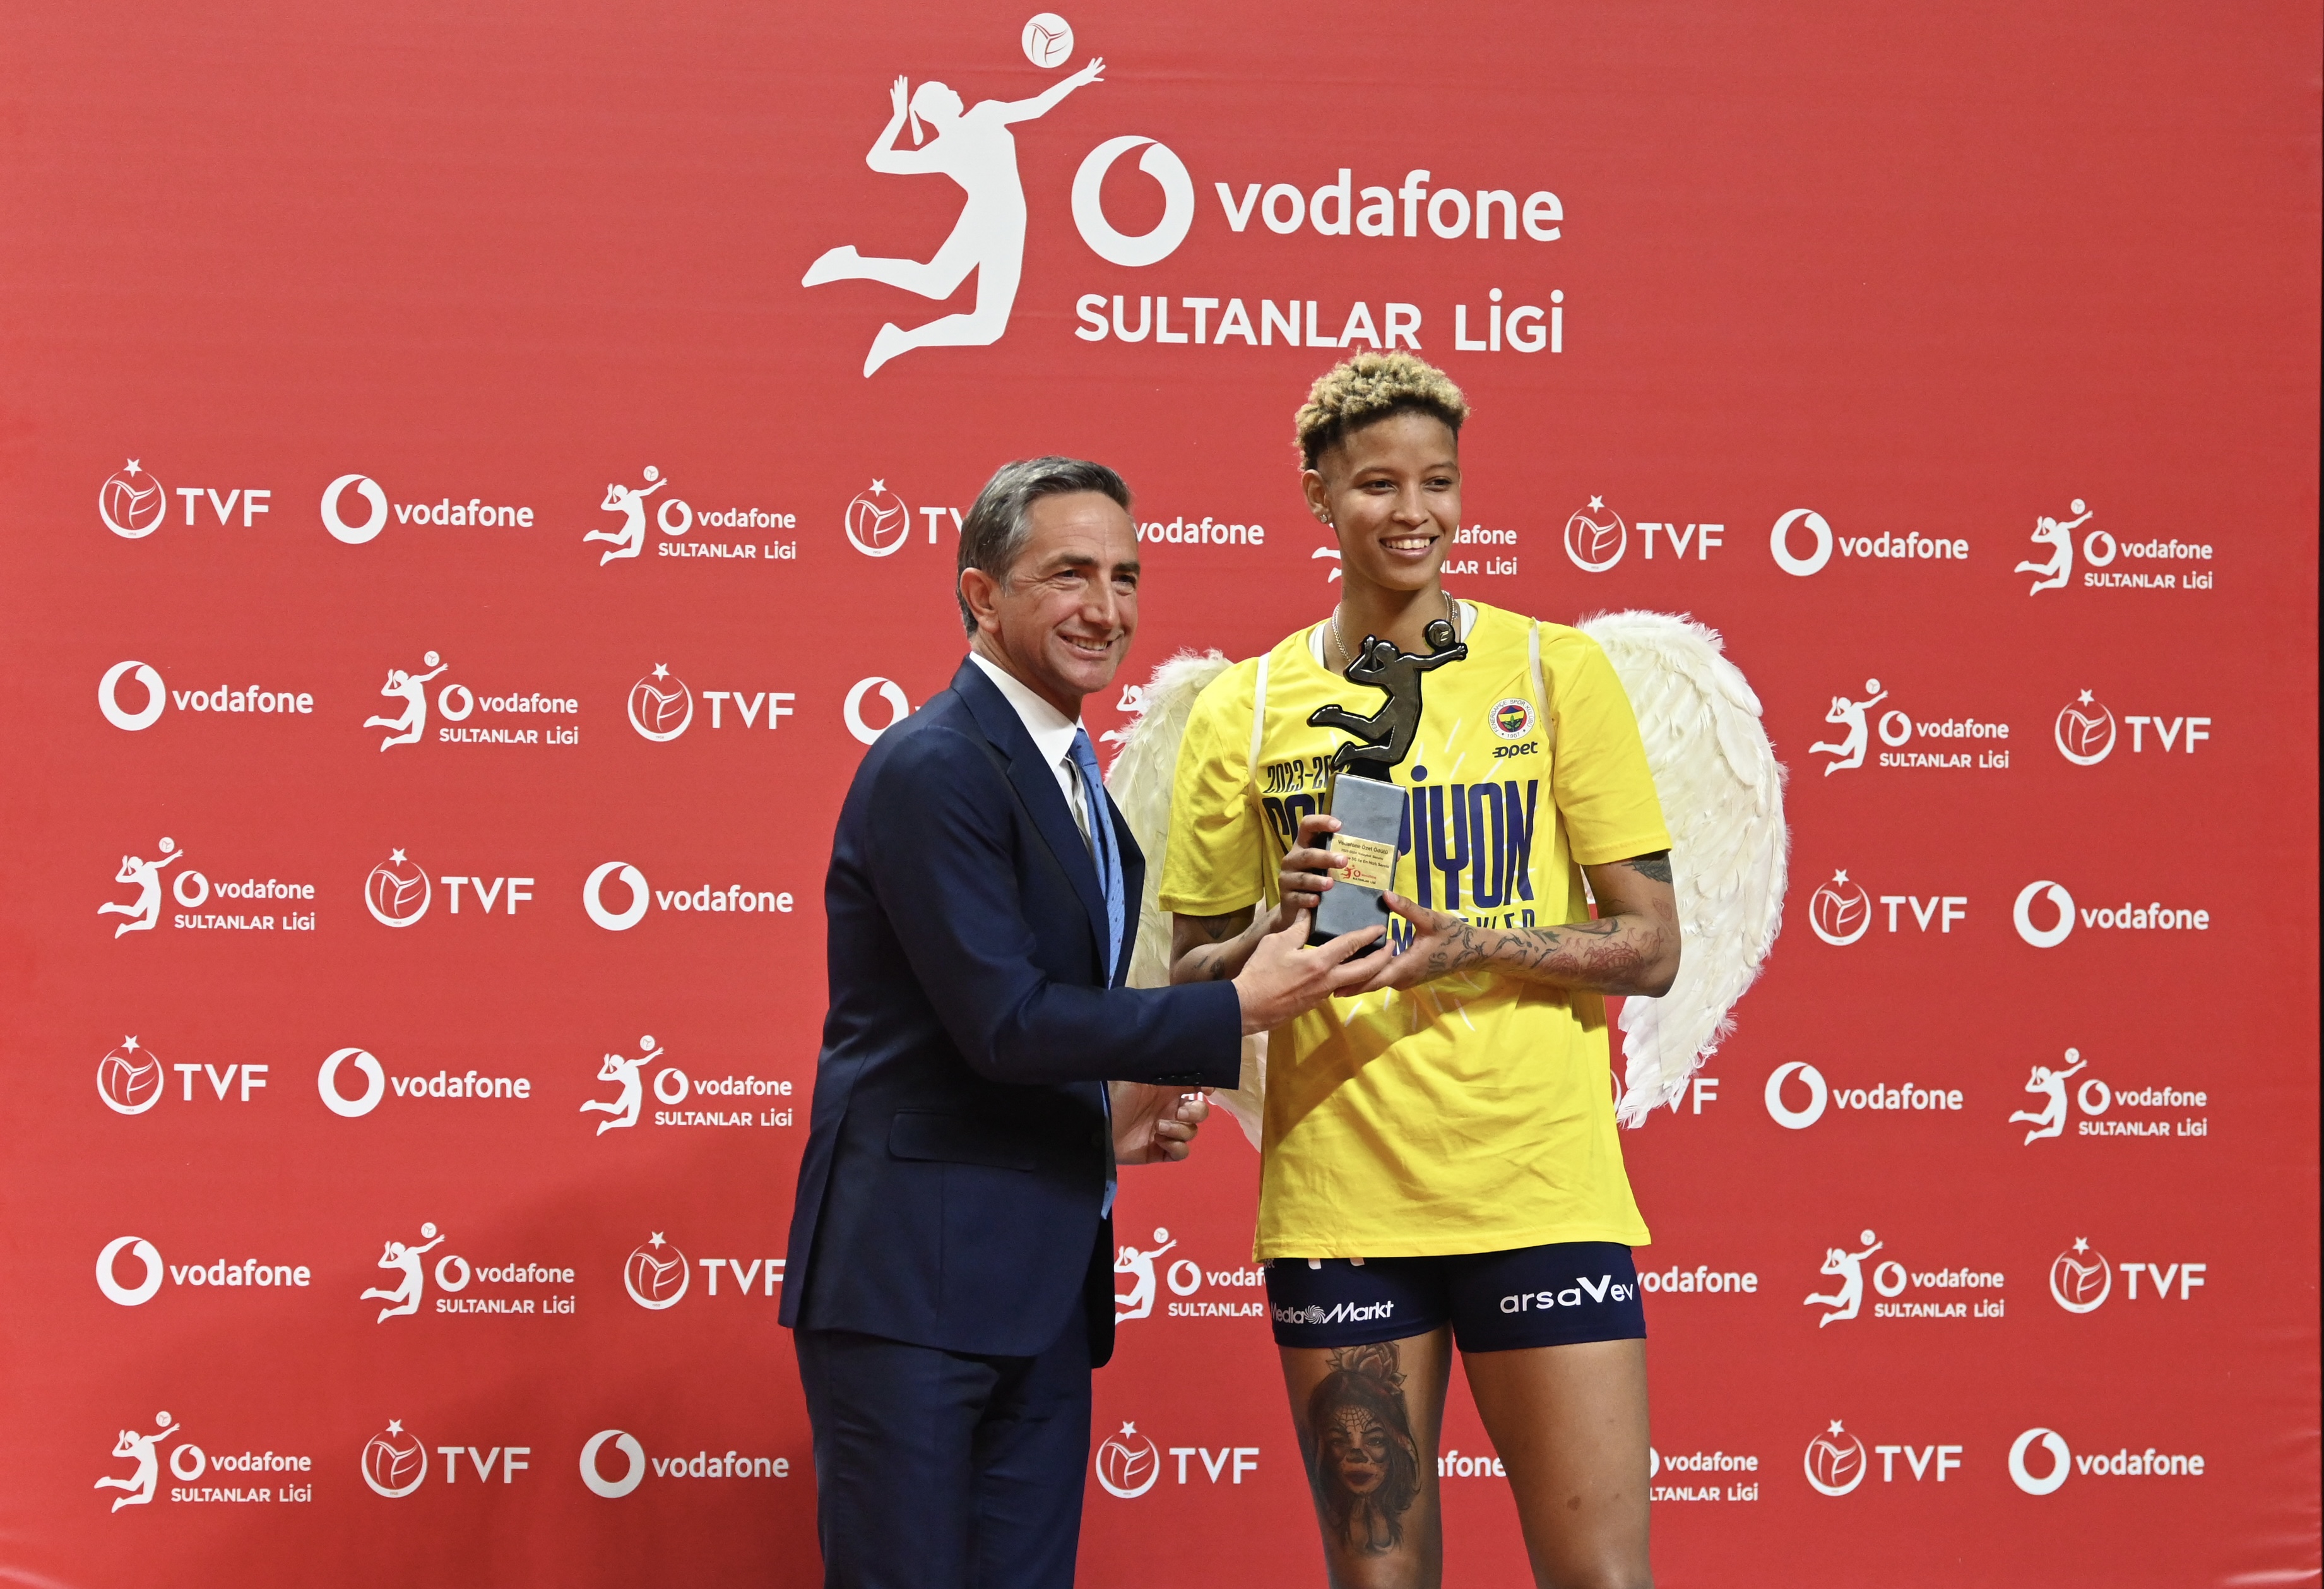 Vodafone Sultanlar Ligi’nde  en hızlı servis ödülü Vargas’ın oldu